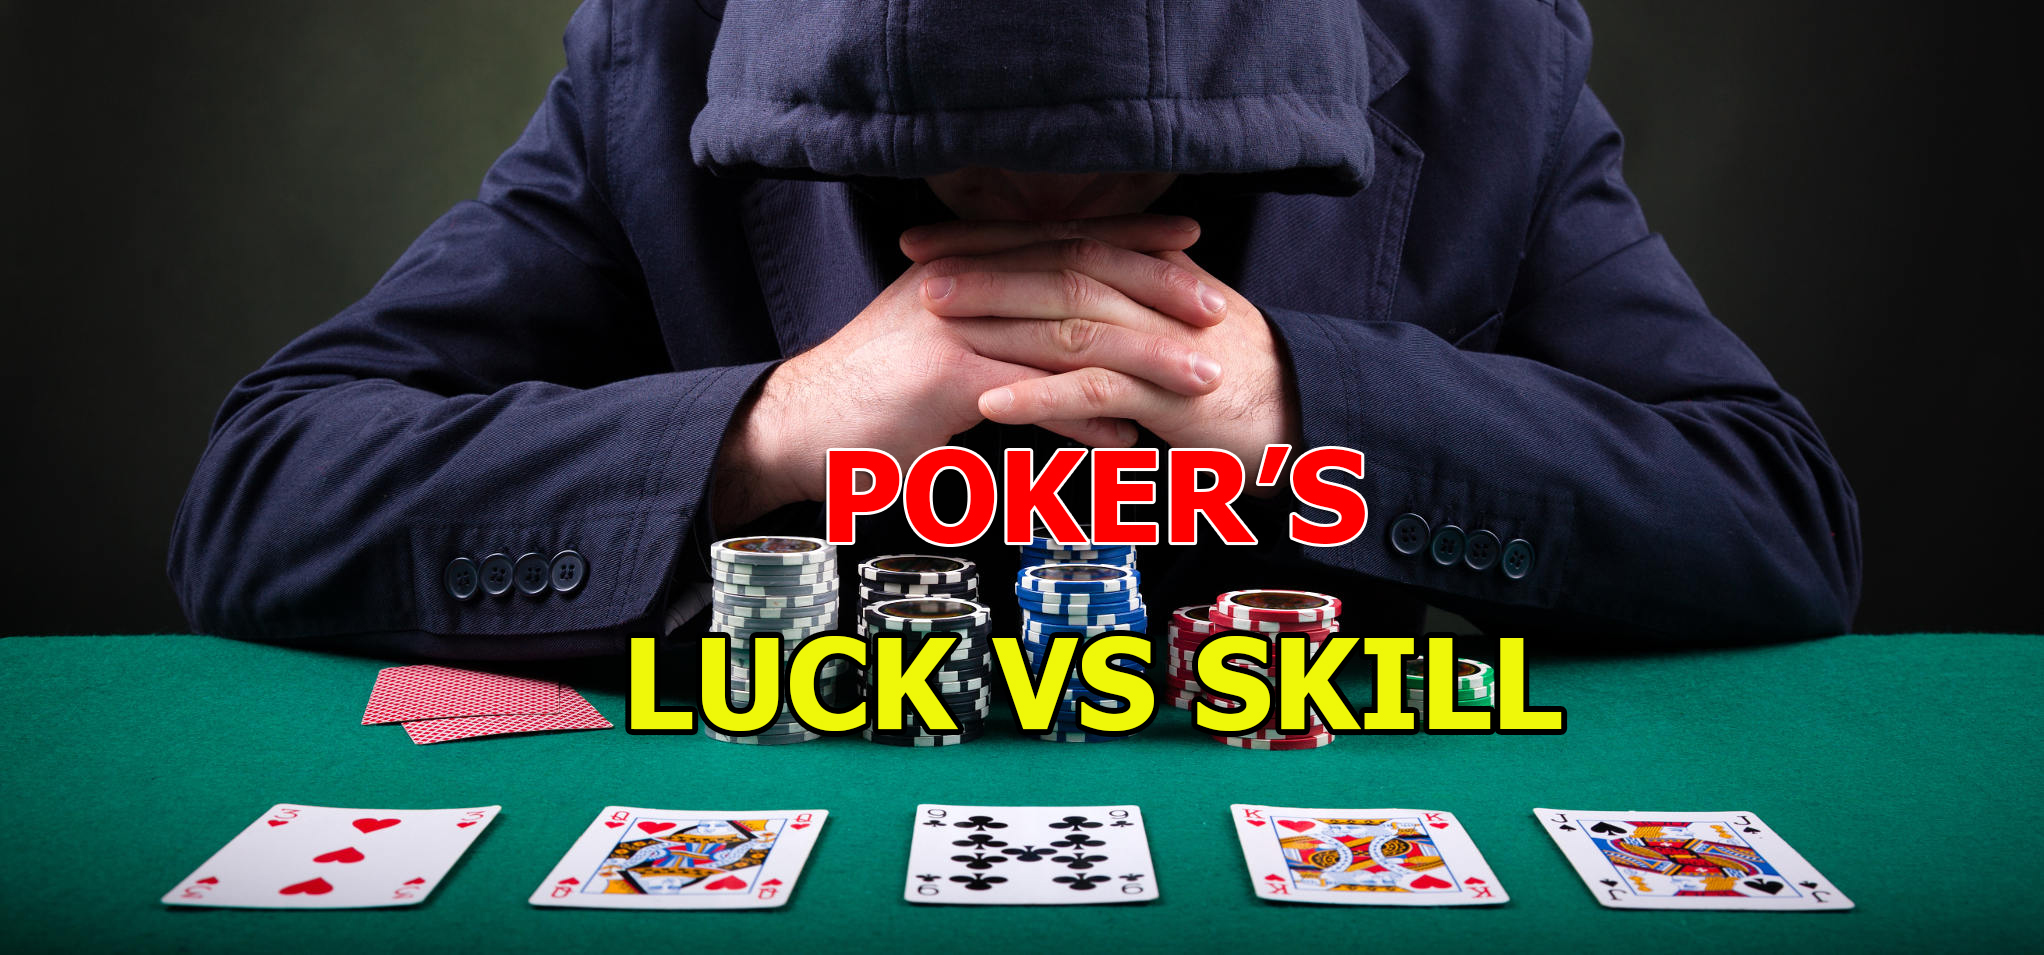 Poker's luck Vs Skill